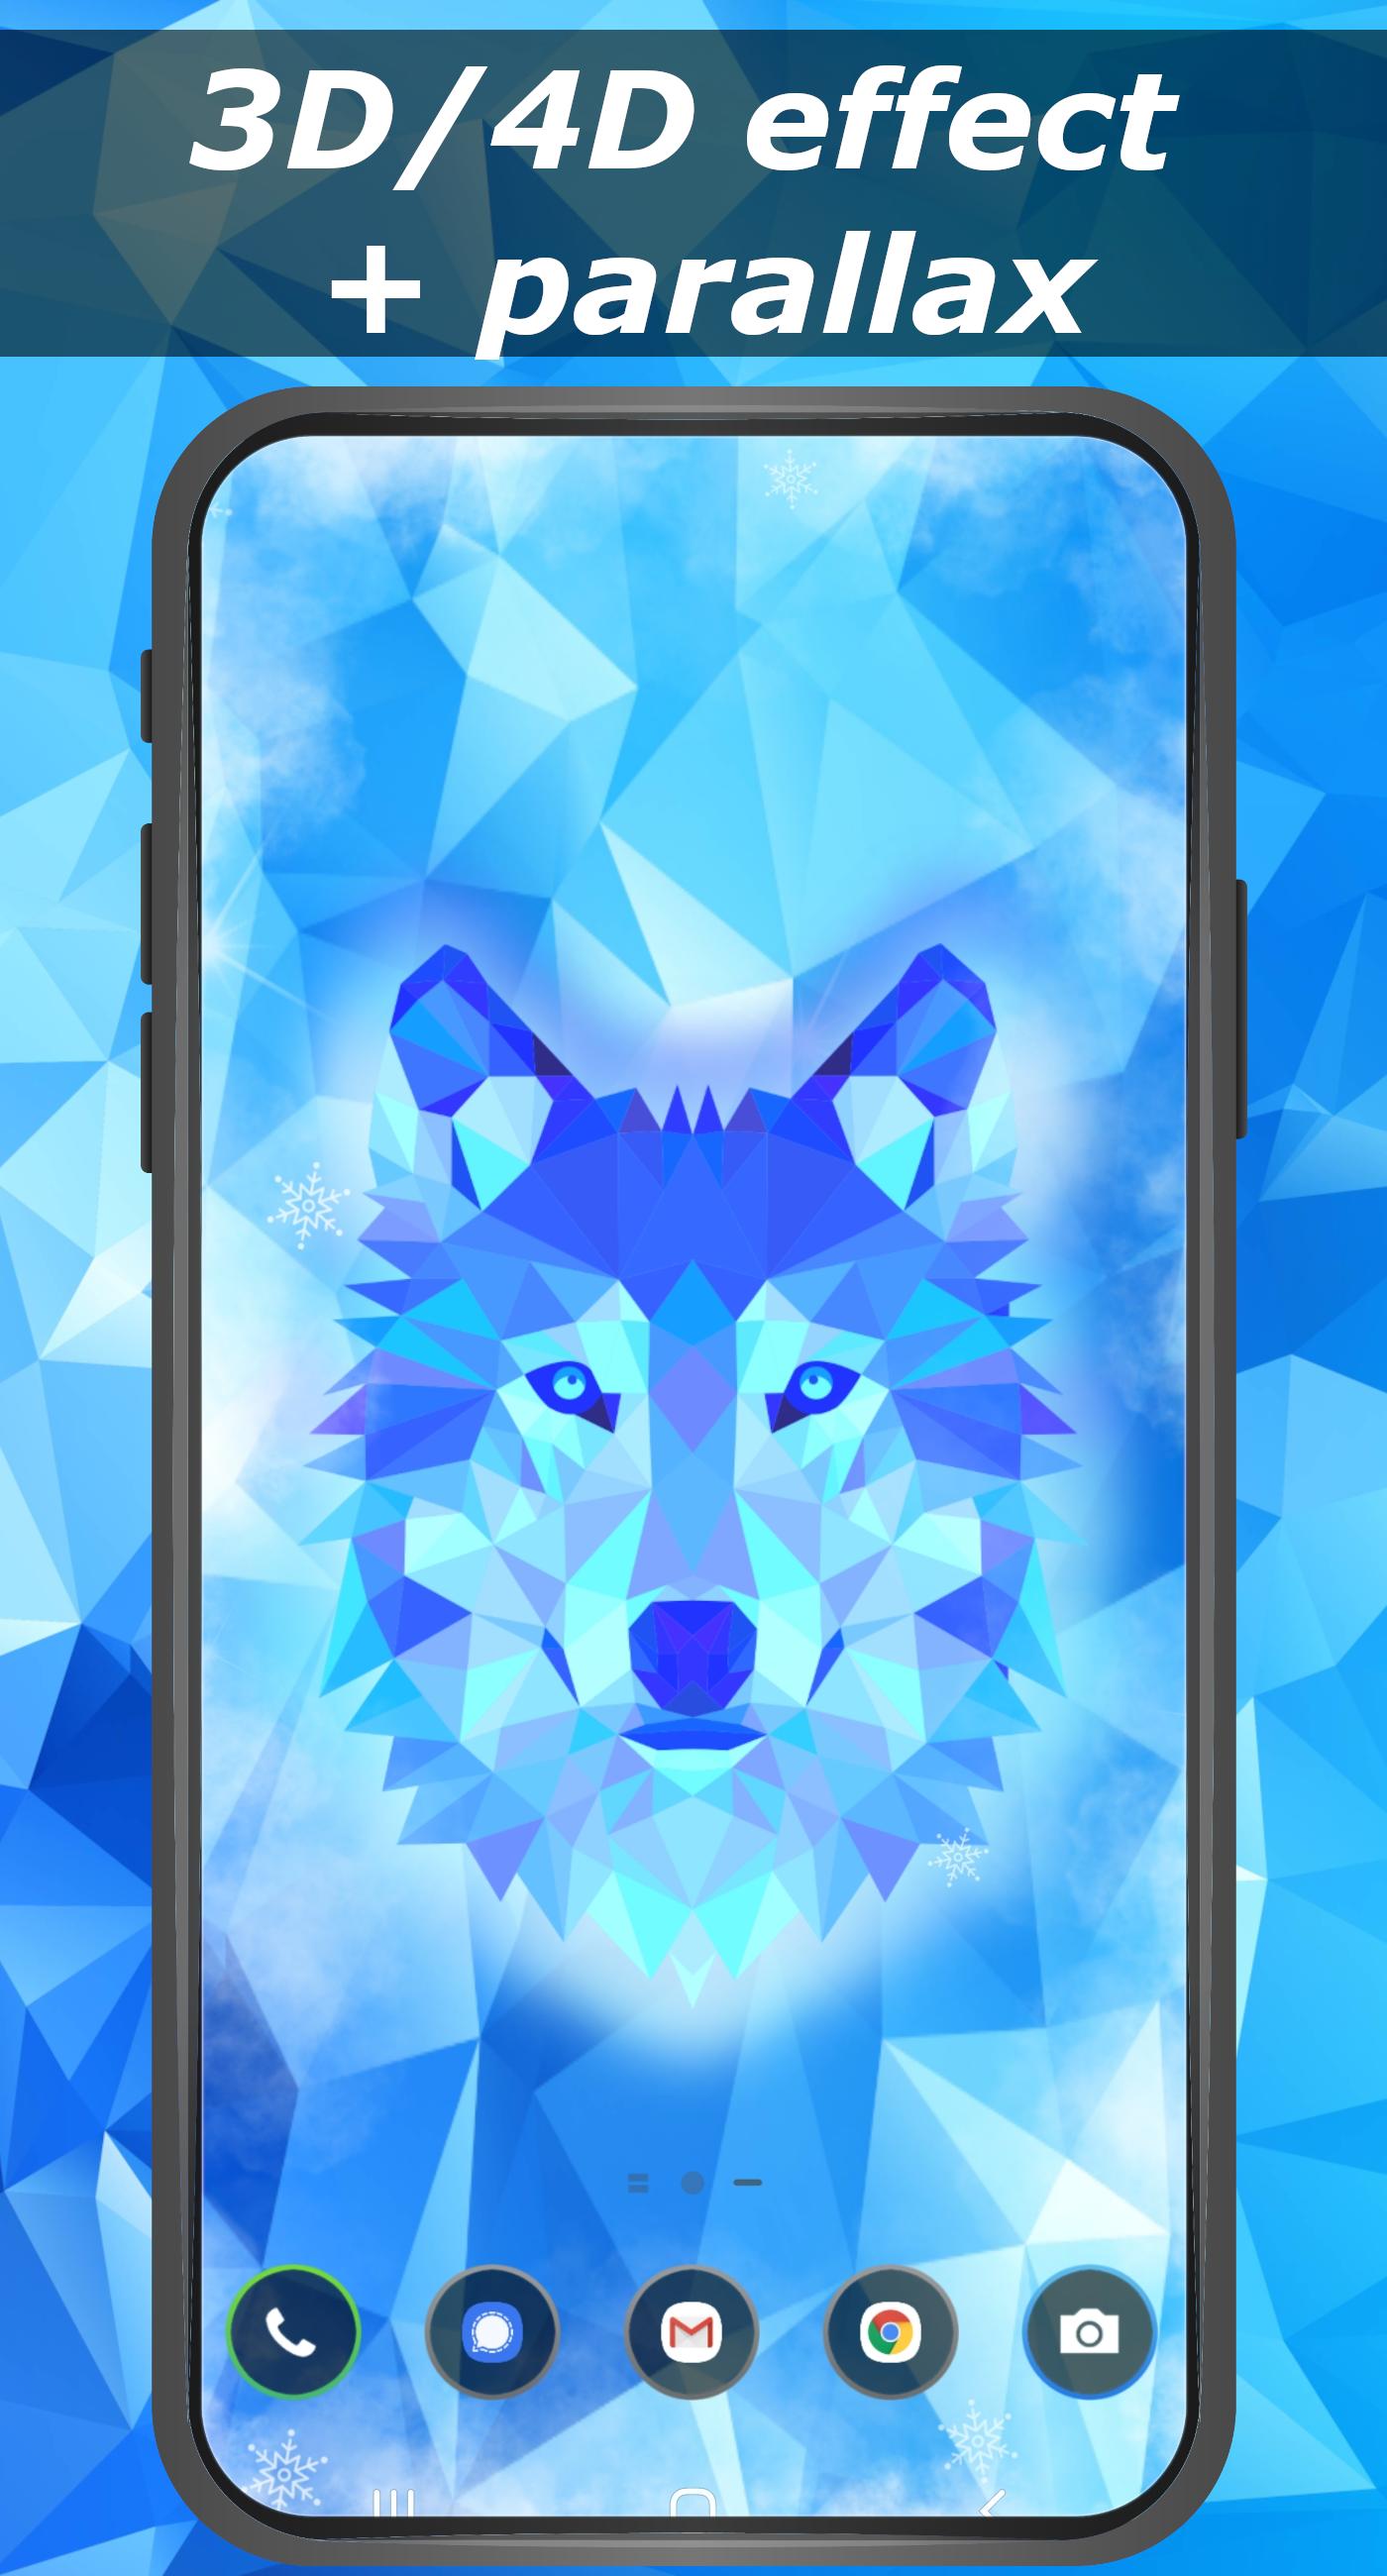 Ice wolf wallpaper 3D - parallax 4D backgrounds 1.0 Screenshot 2